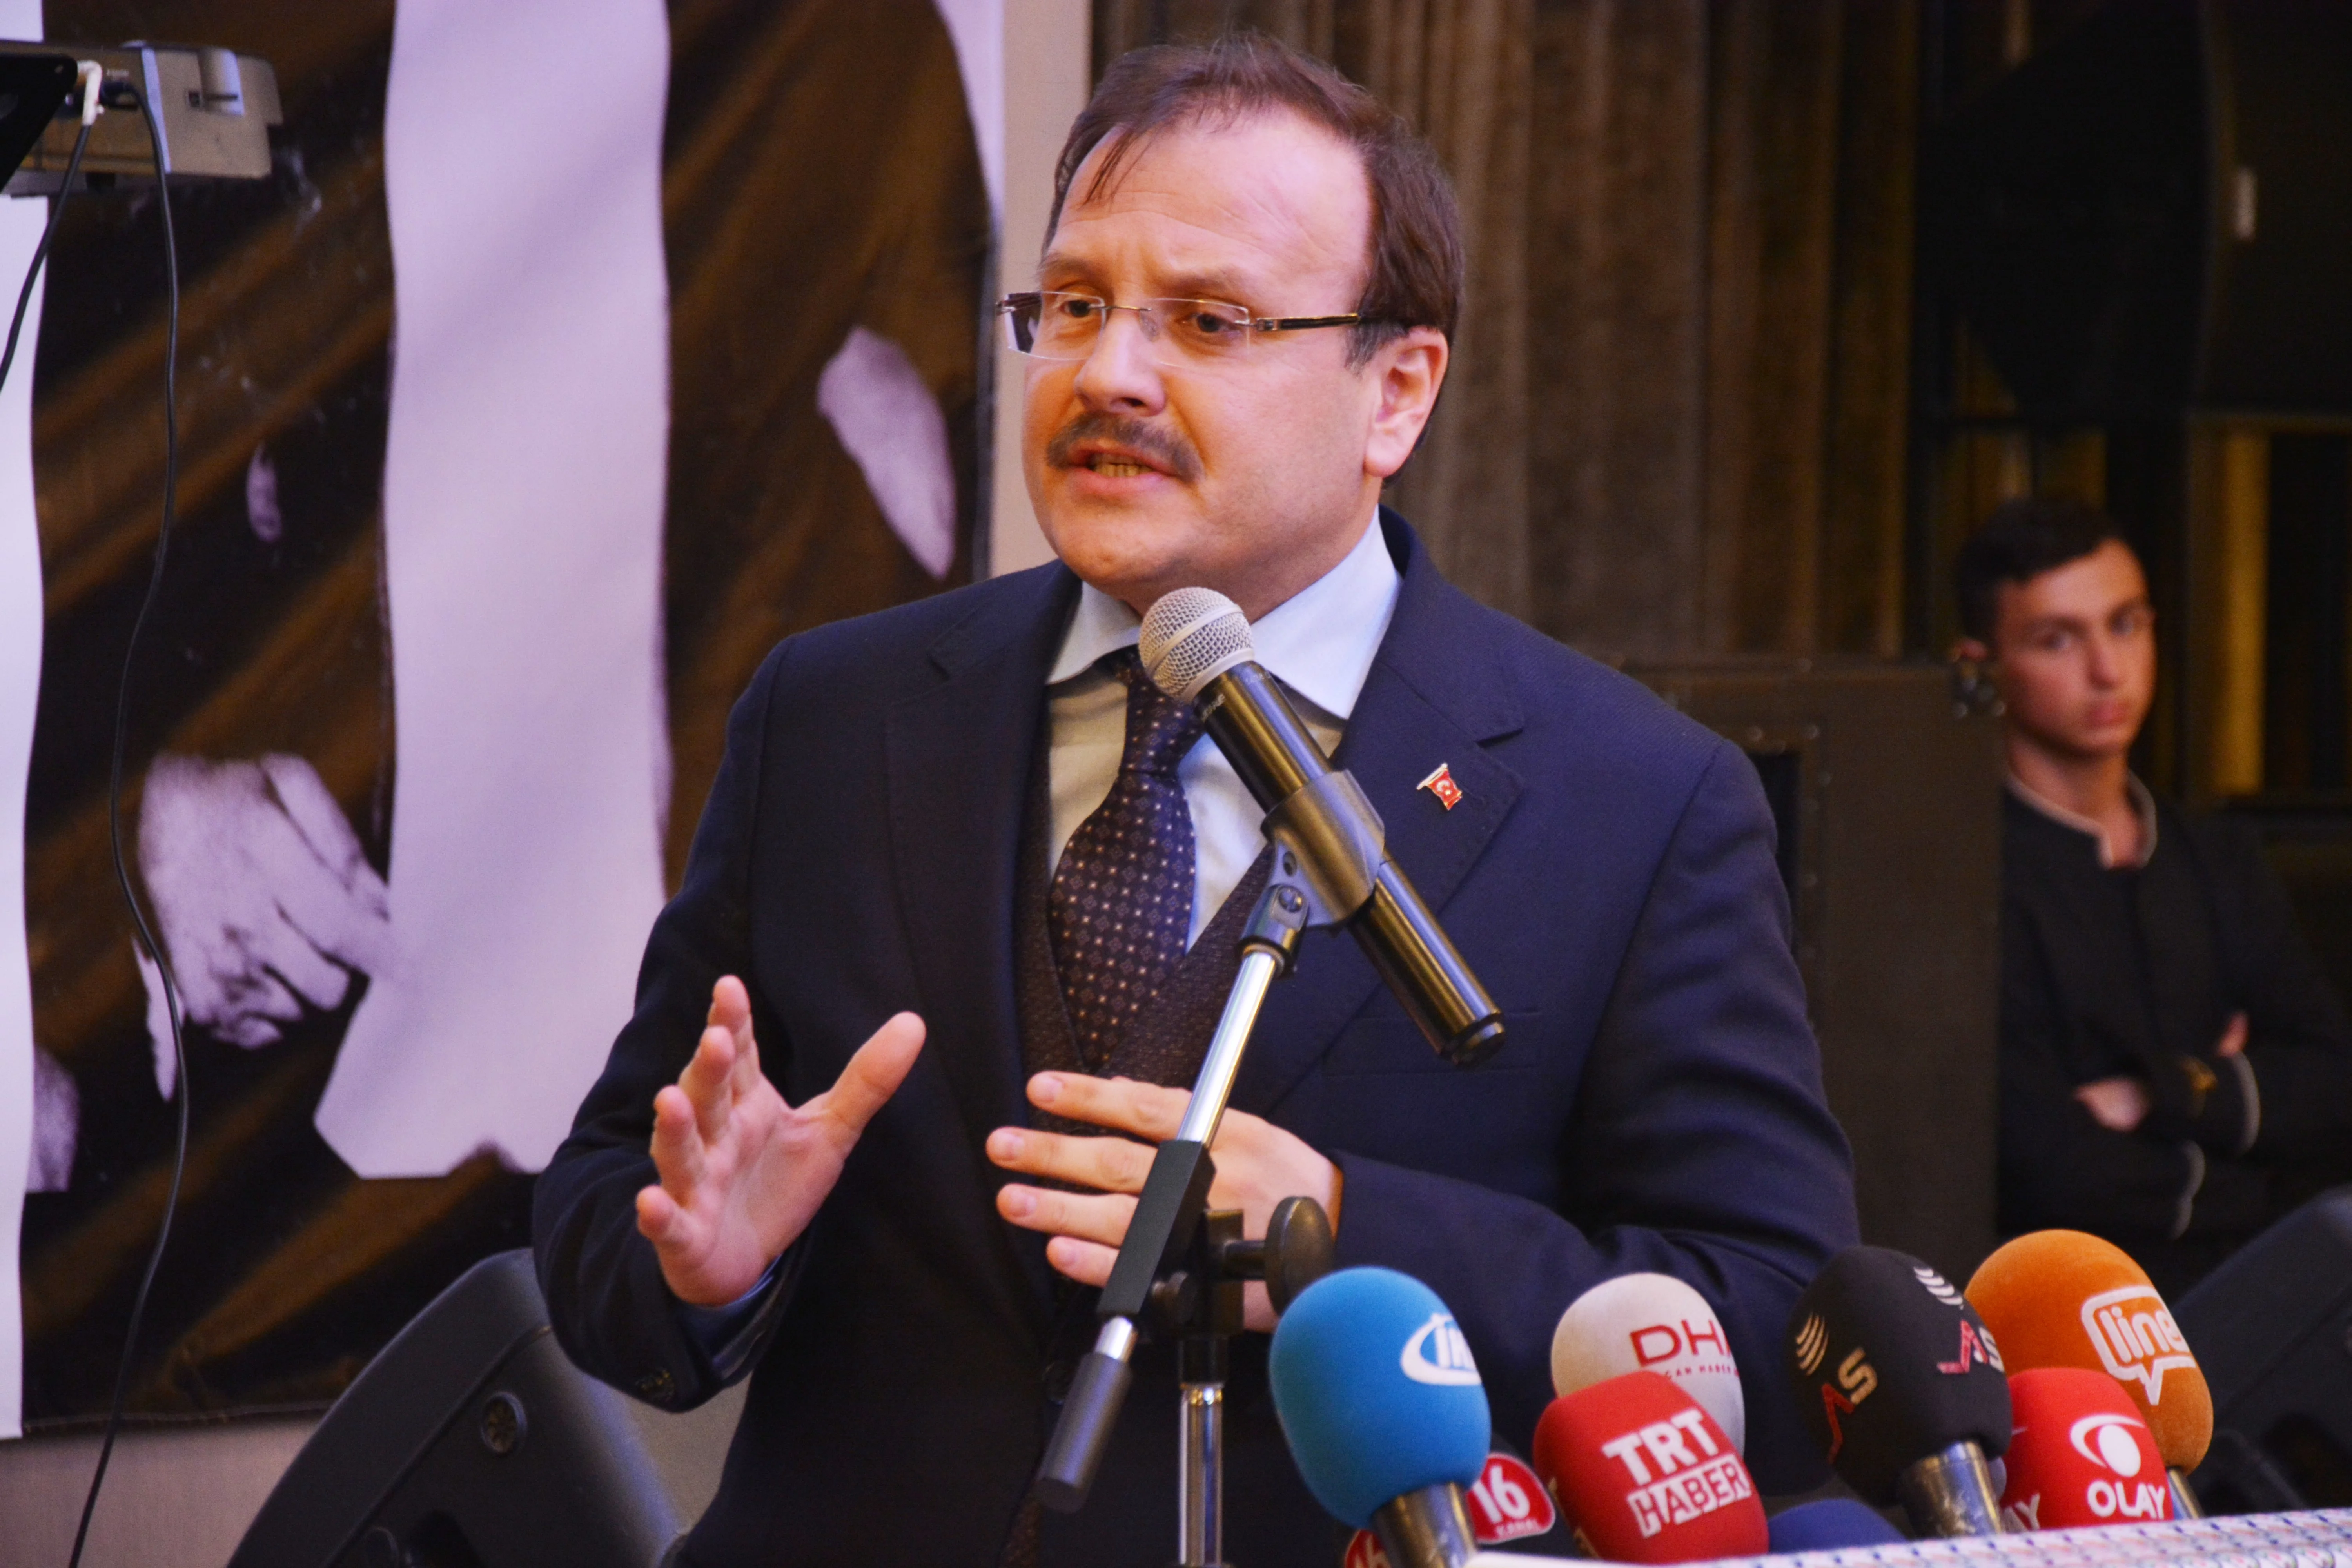 Başbakan Yardımcısı Çavuşoğlu: “Türkiye’nin güçlü olması gerekiyor”